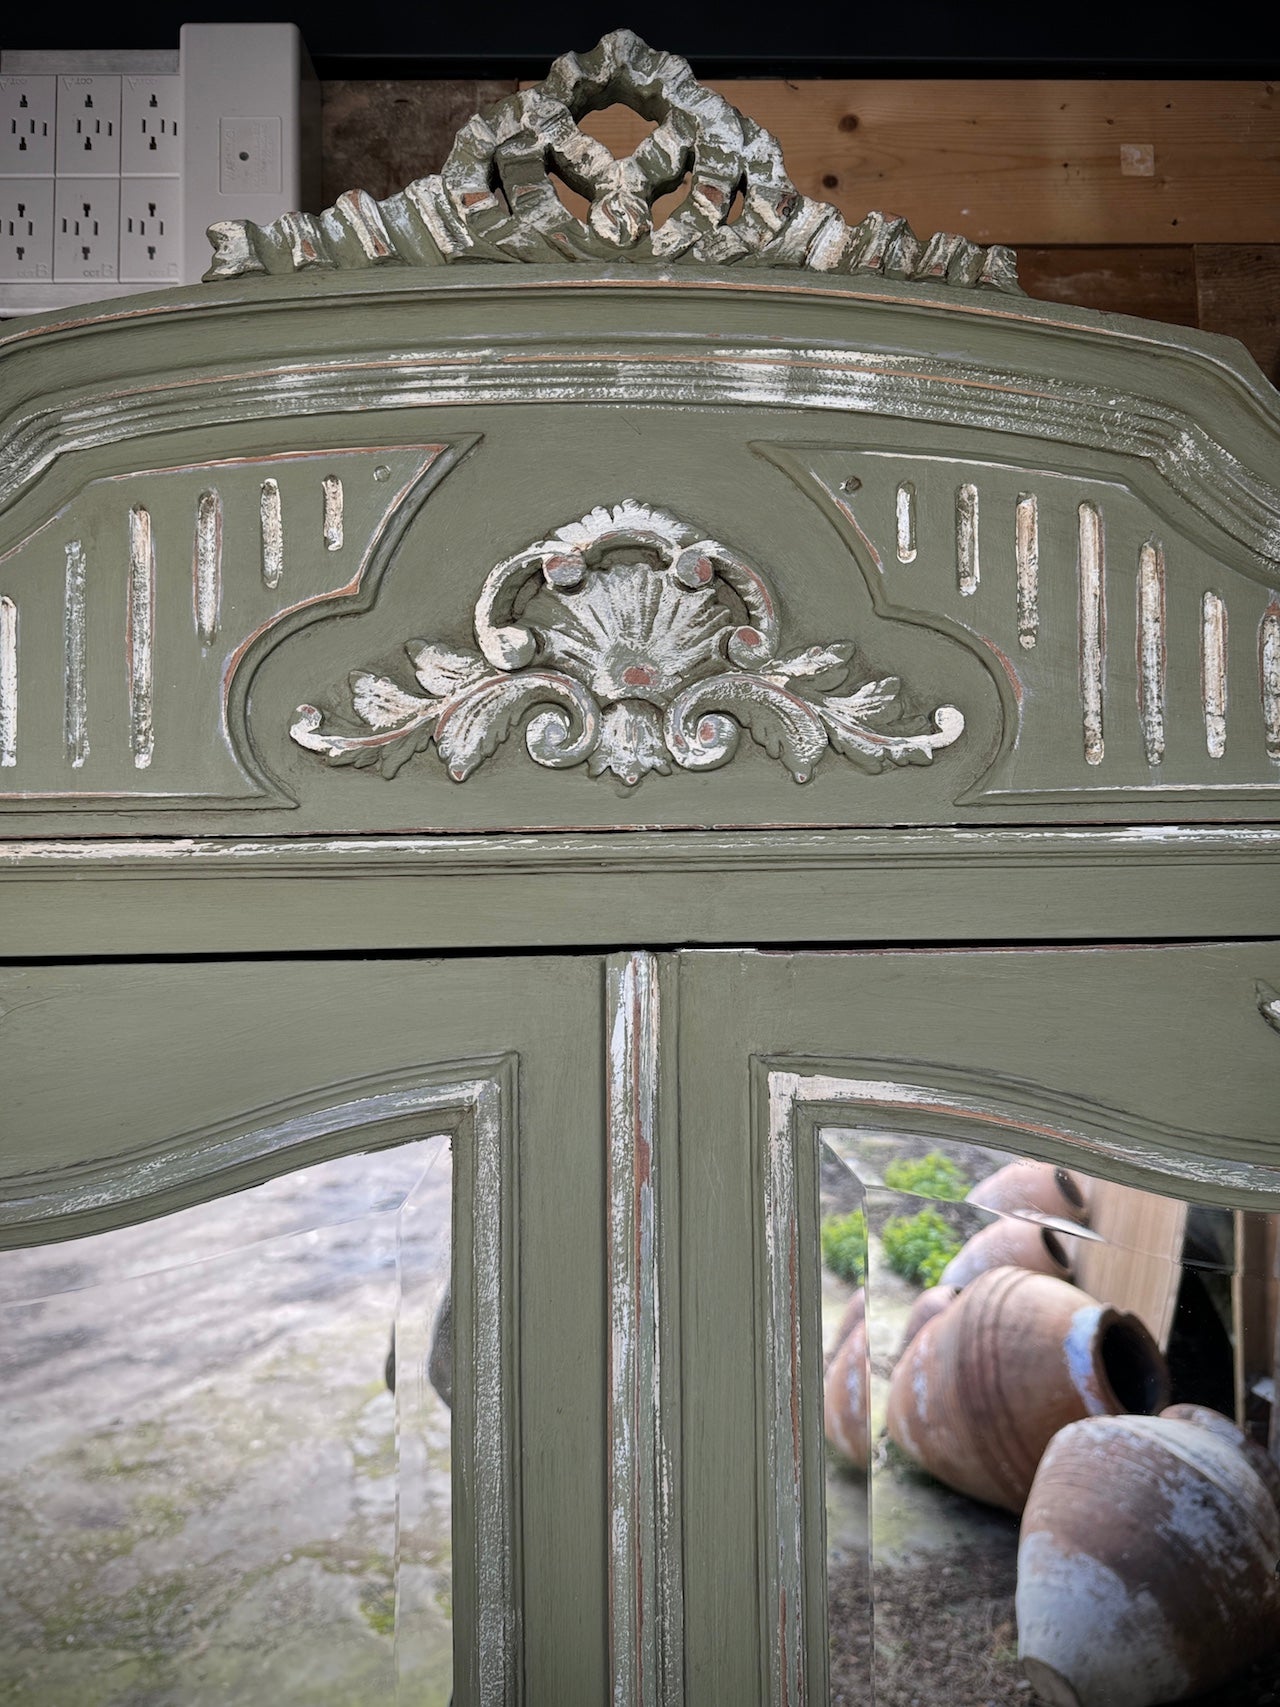 Pretty little mirrored armoire / linen press